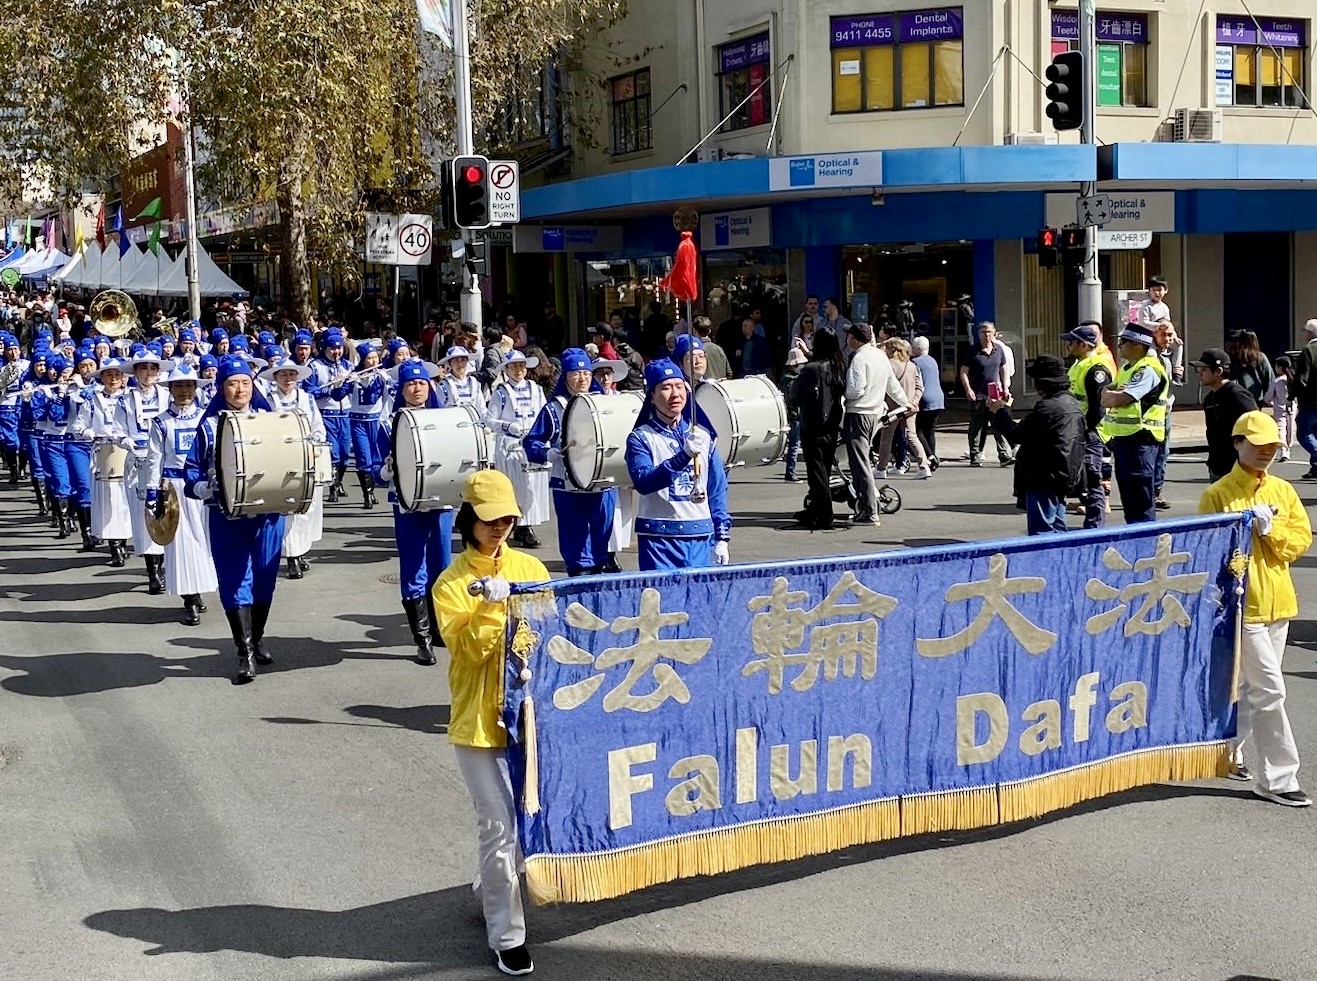 Image for article Сідней, Австралія. Практику Фалуньгун представили під час проведення вуличного ярмарку в місті Віллоубі